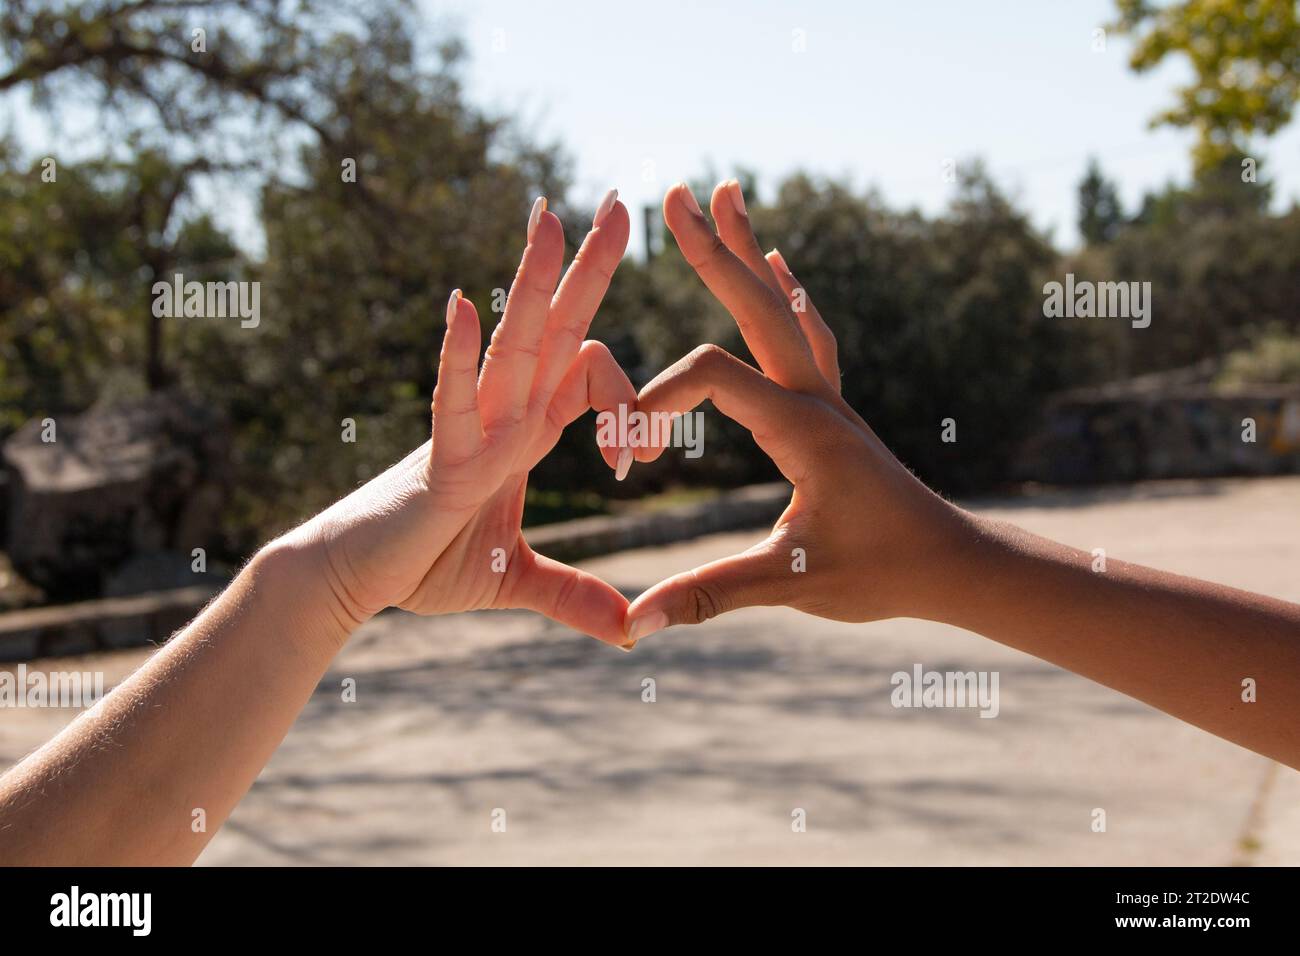 Mains de différentes ethnies, africaines et européennes, formant un cœur avec leurs doigts. Concept d'amour, d'amitié, d'égalité Banque D'Images